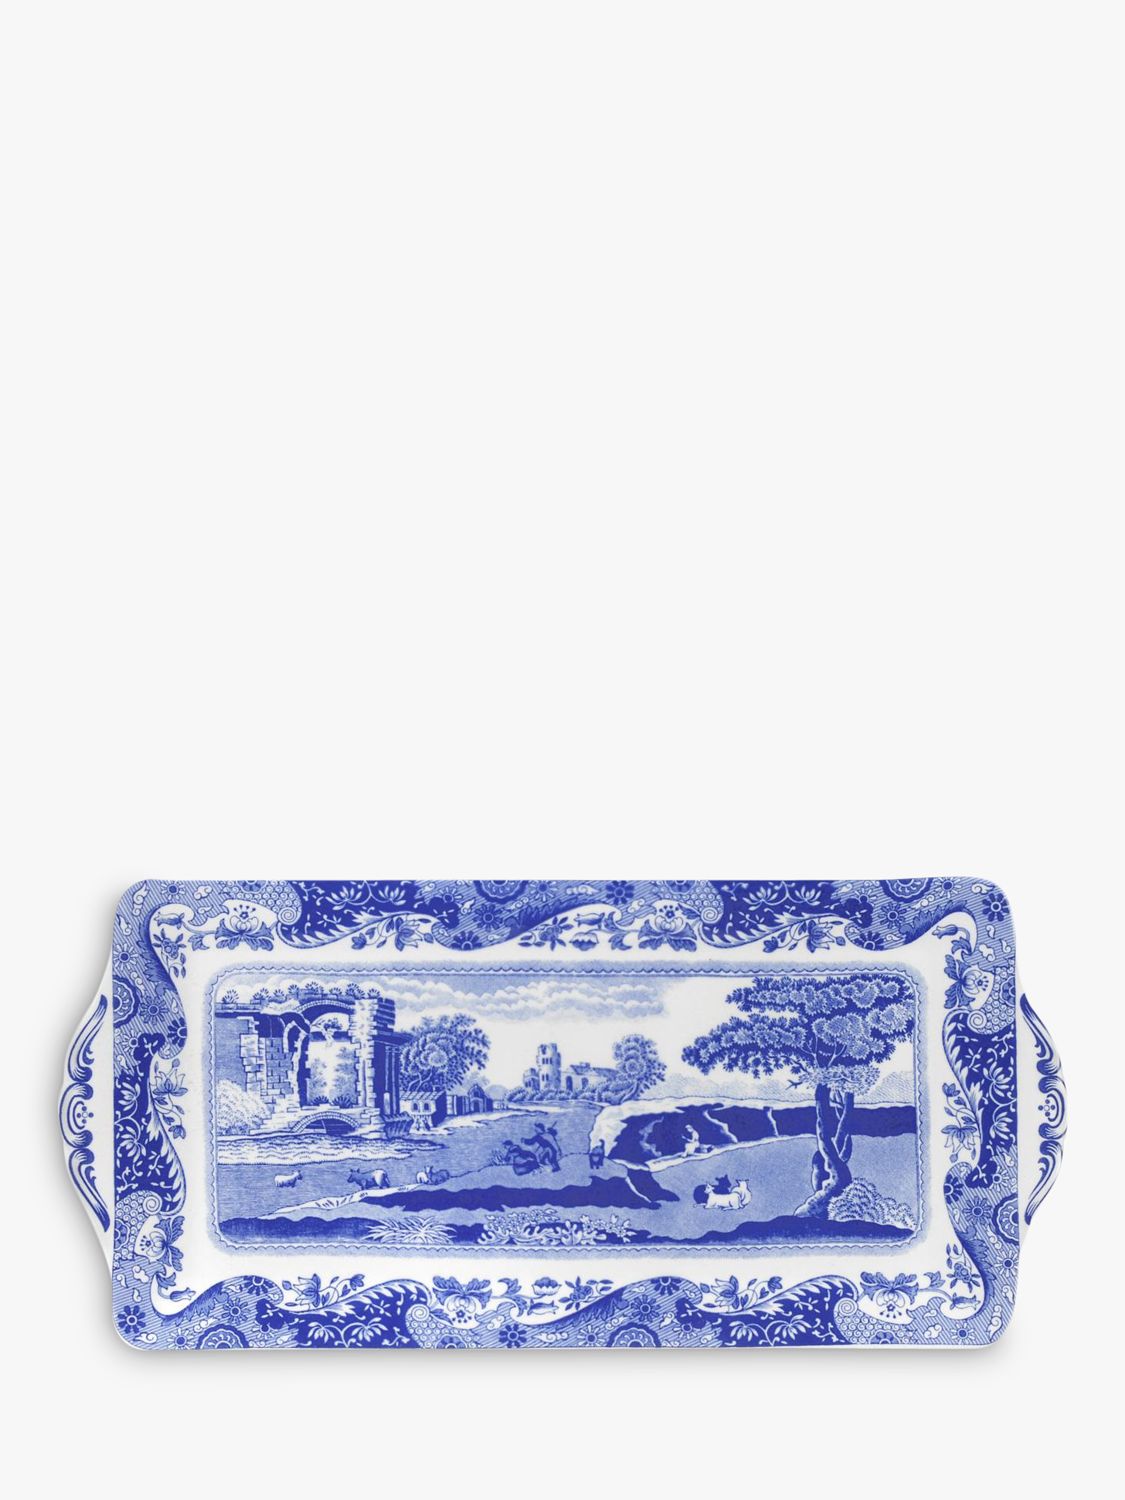 Spode Blue Italian Rectangular Sandwich Tray, 34cm, Blue/White